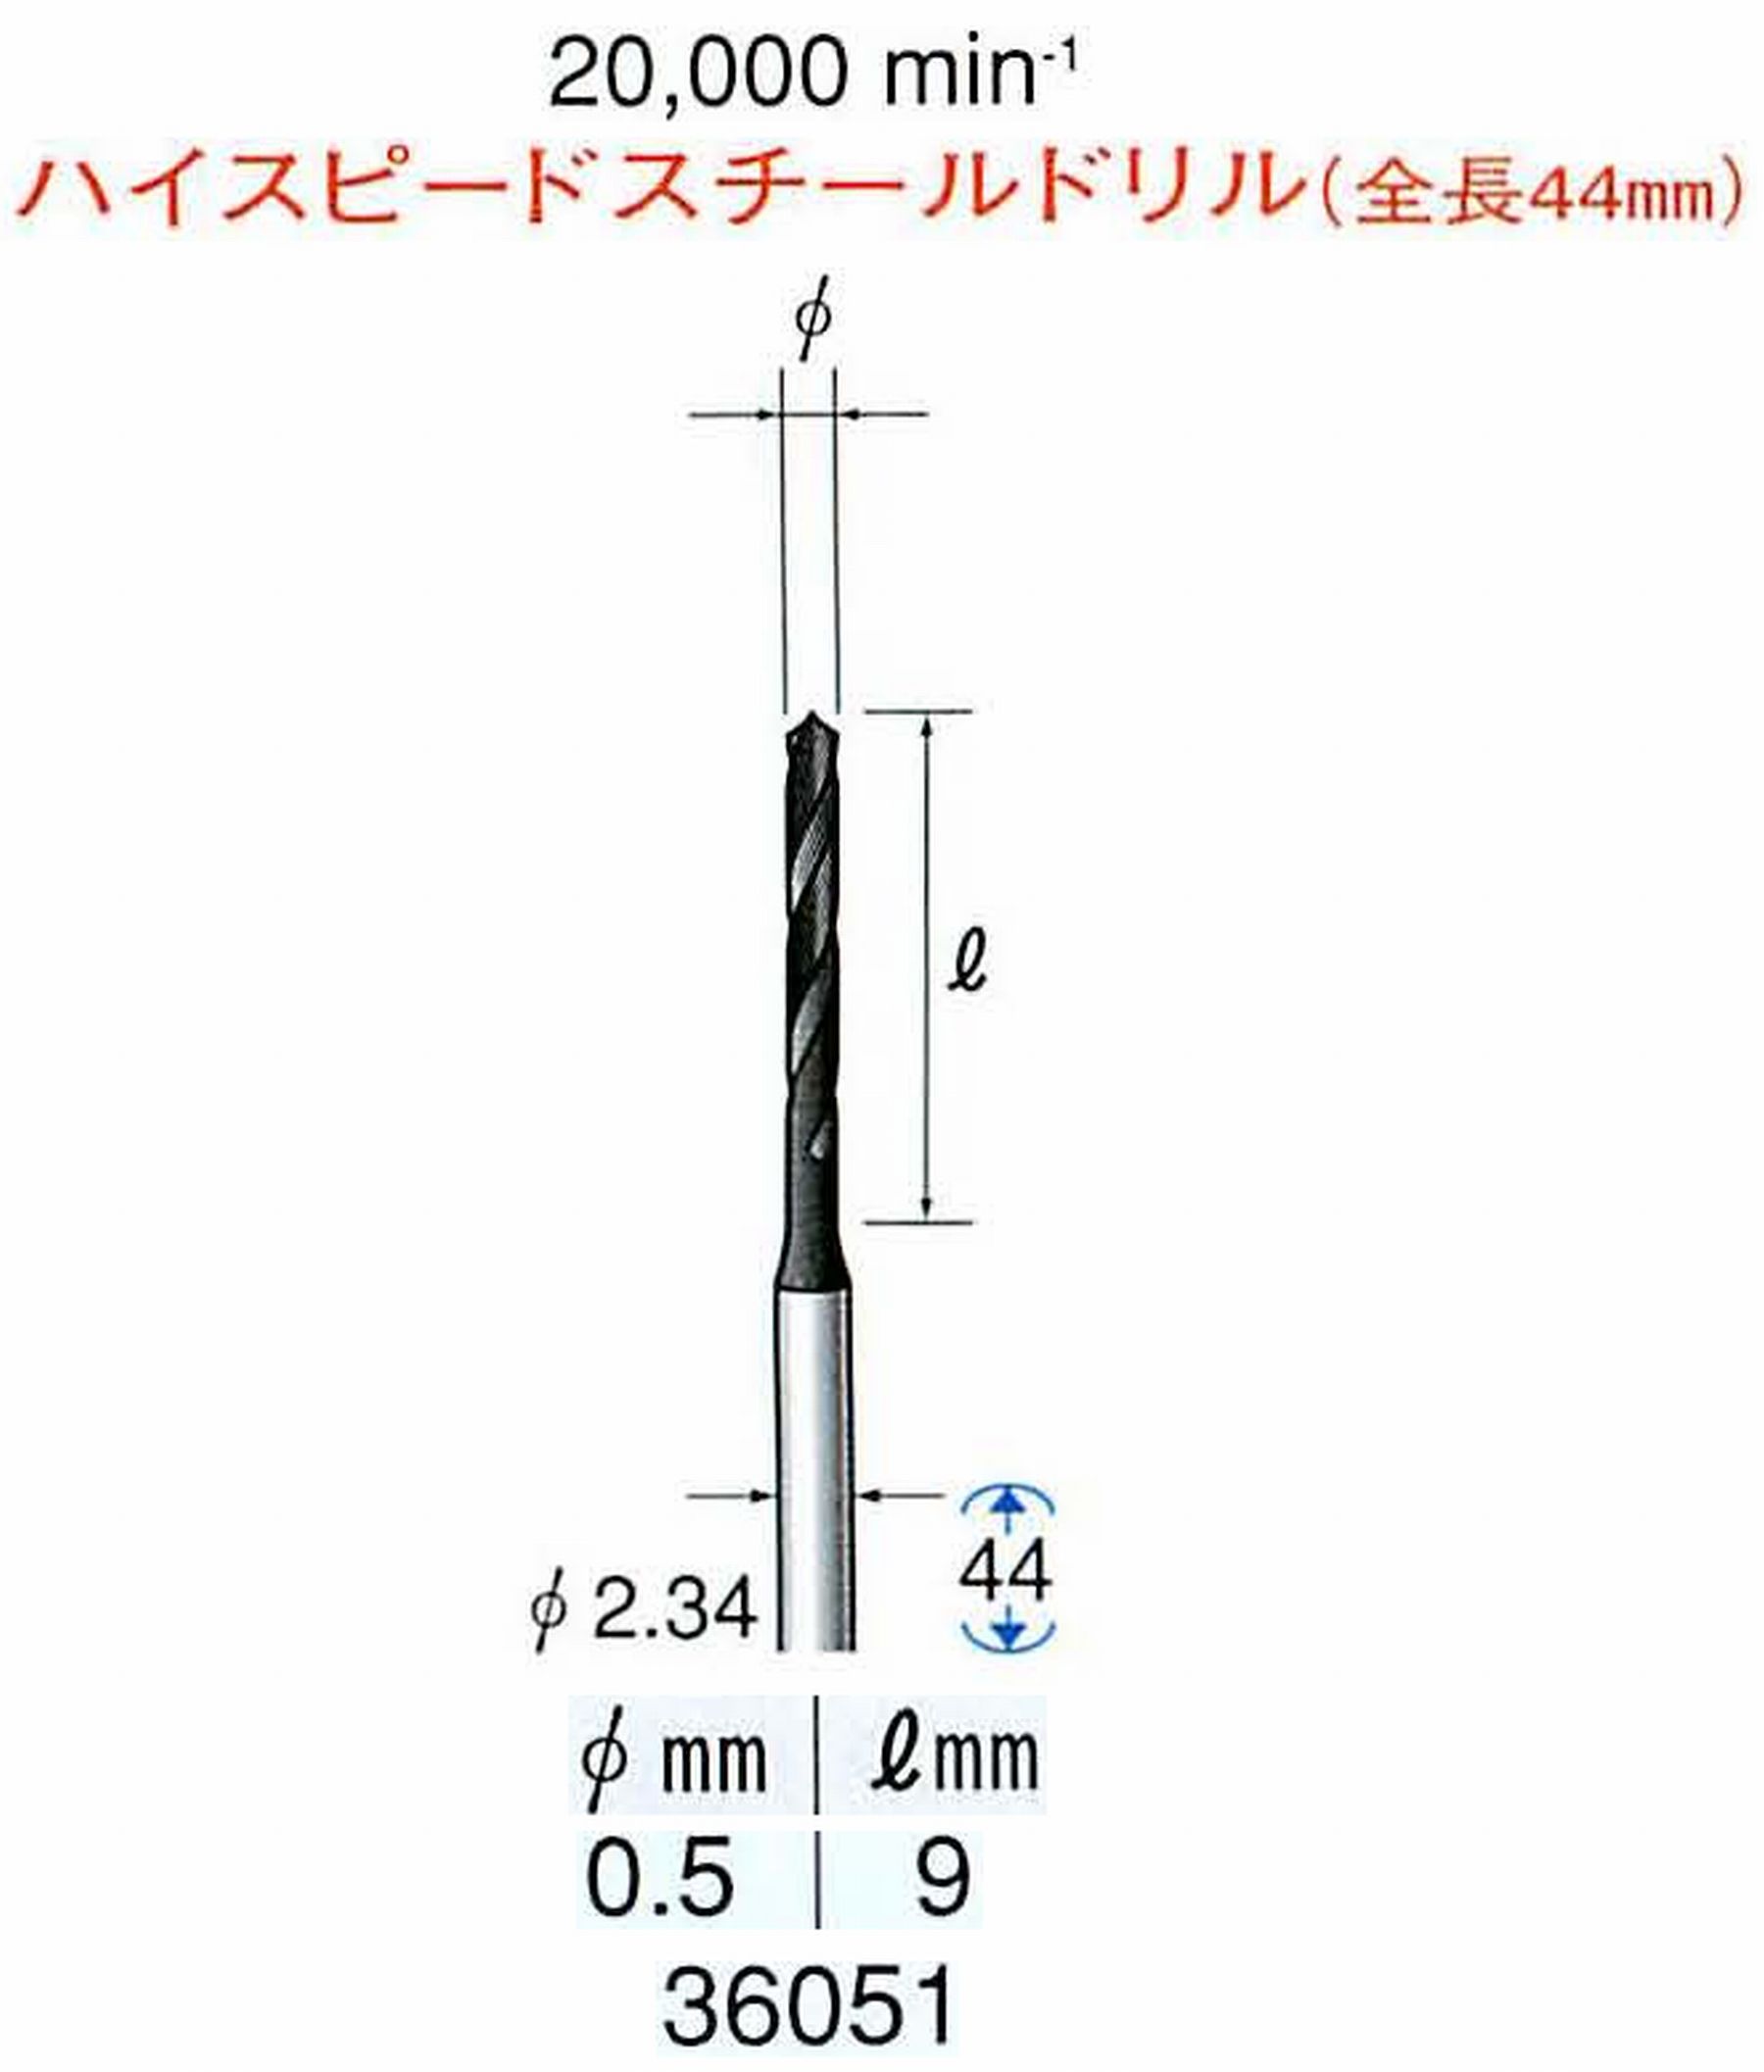 ナカニシ/NAKANISHI ツイストドリル ハイスピードスチール(H.S.S)ドリル(全長44mm) 軸径(シャンク) φ2.34mm 36051